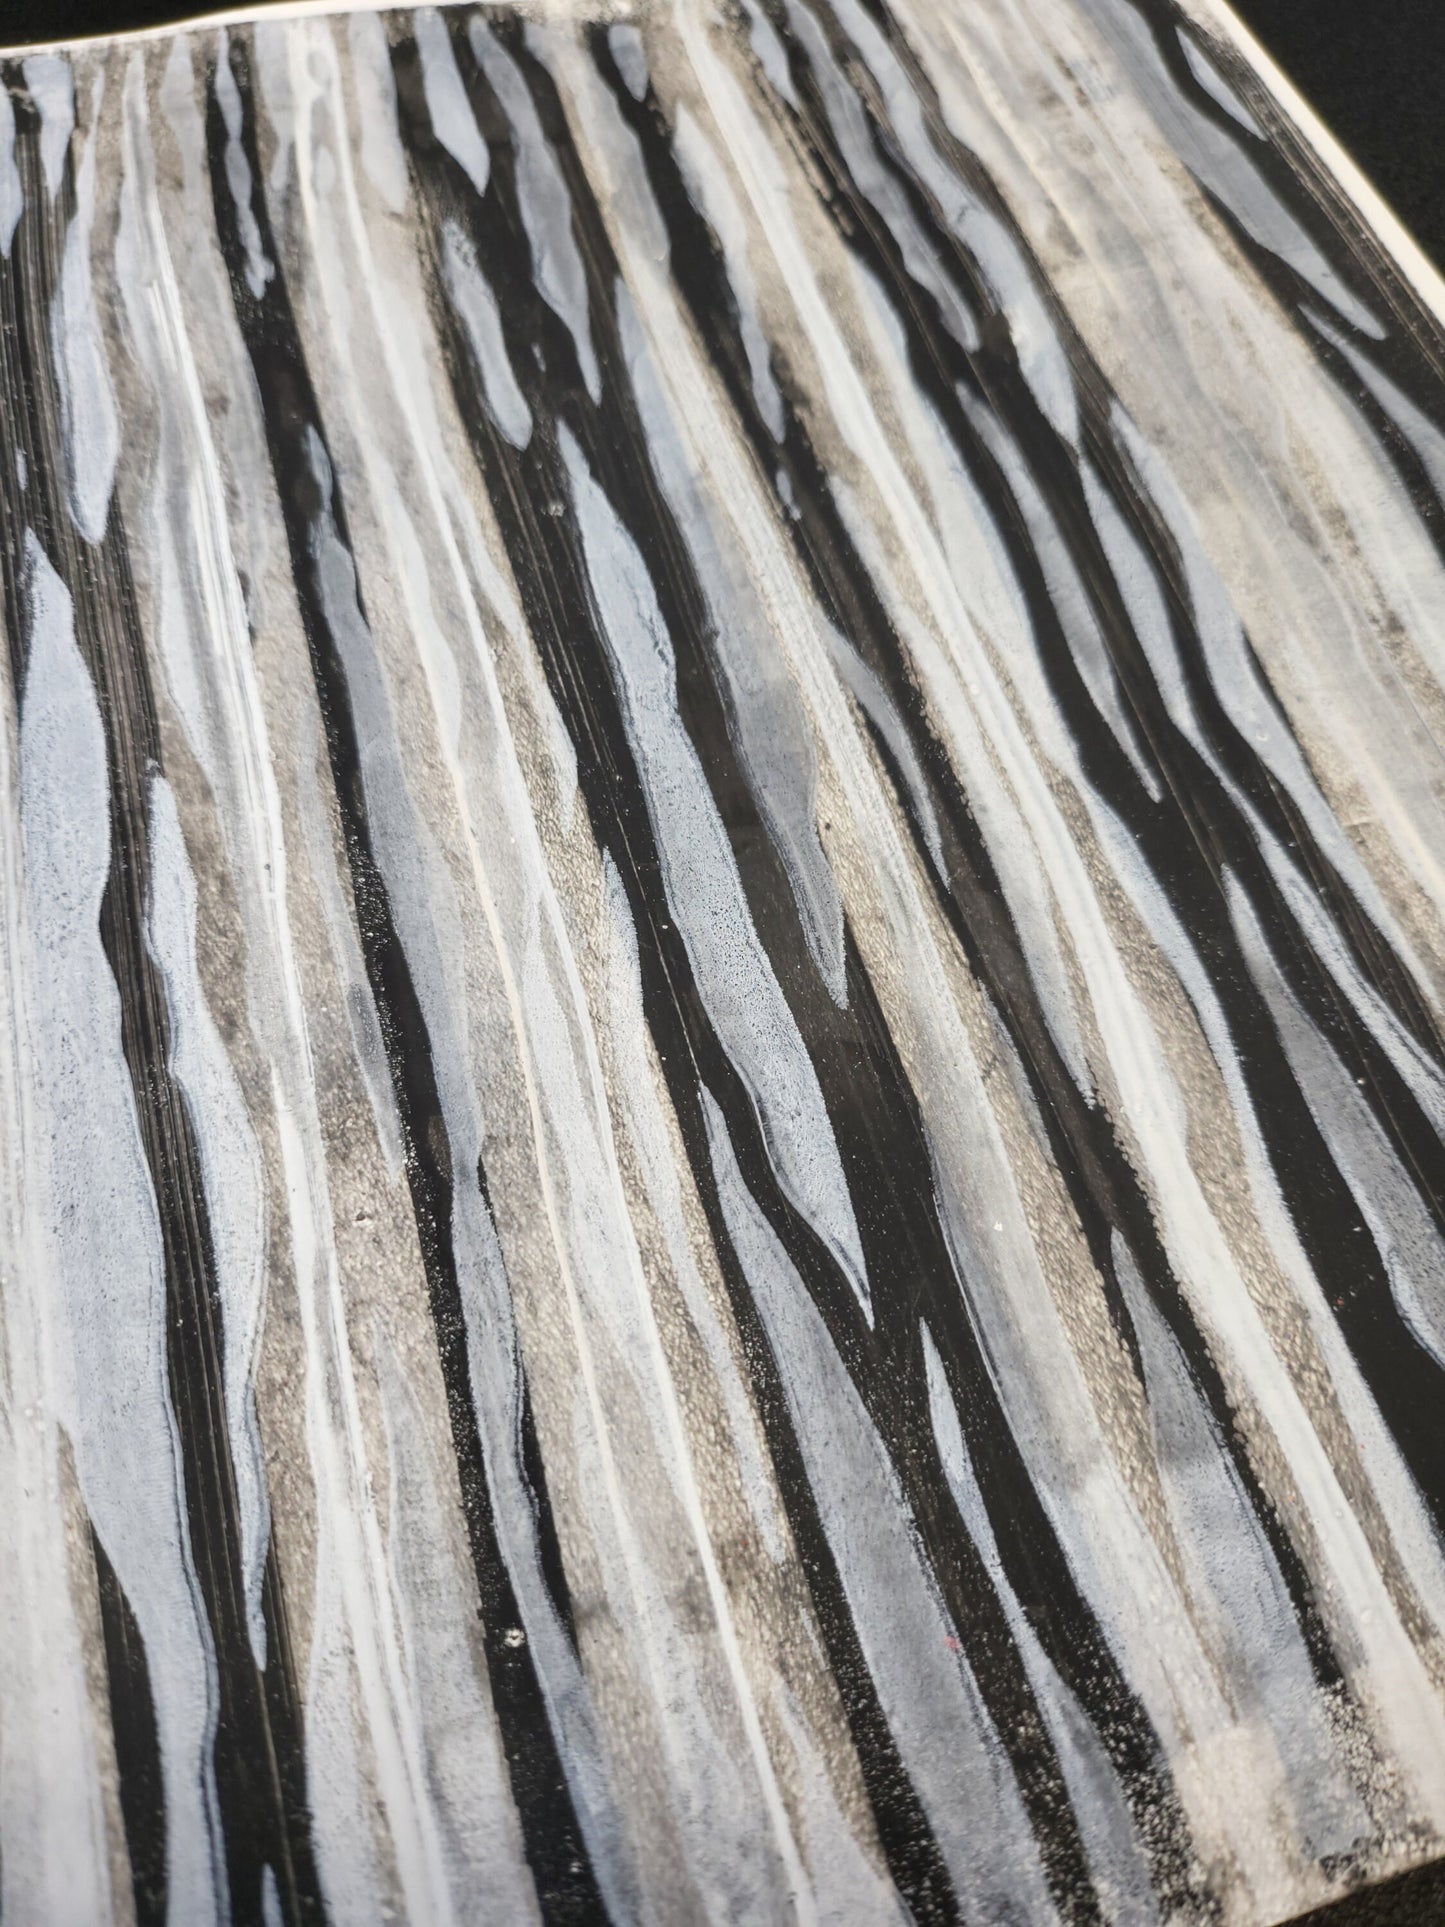 Zebra Stripes 8.5"x11" Cardstock